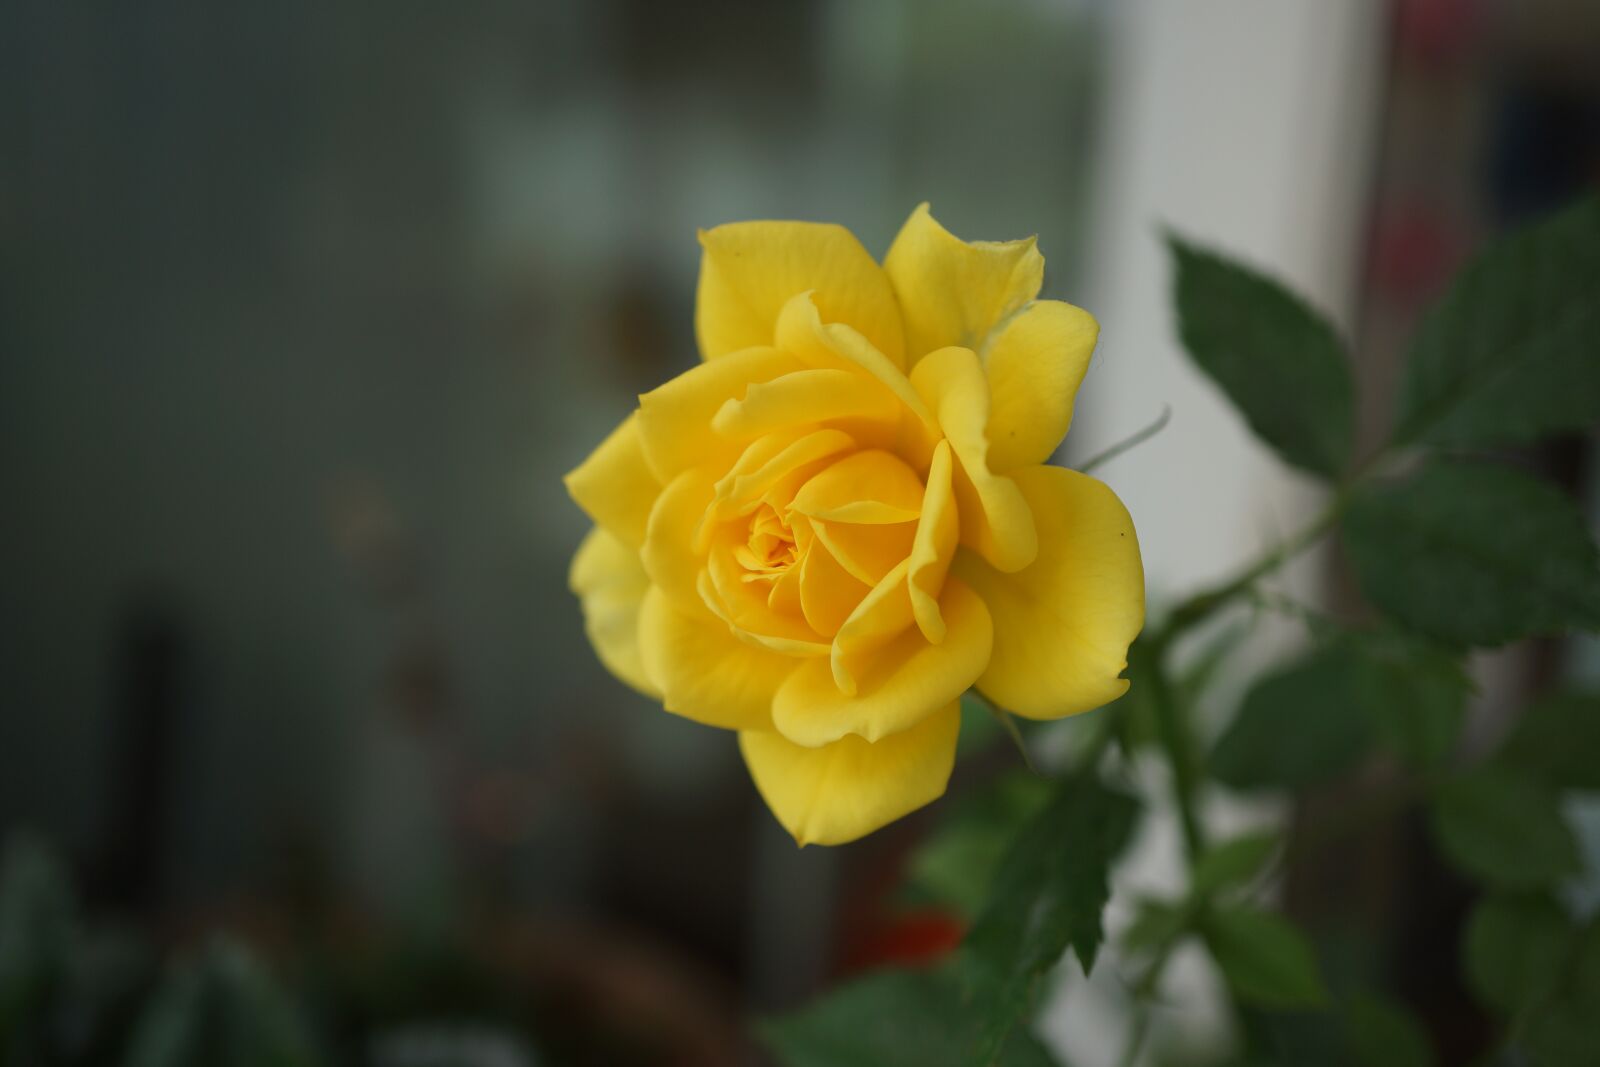 Sony E 30mm F3.5 Macro sample photo. Yellow, jasmine, plant photography